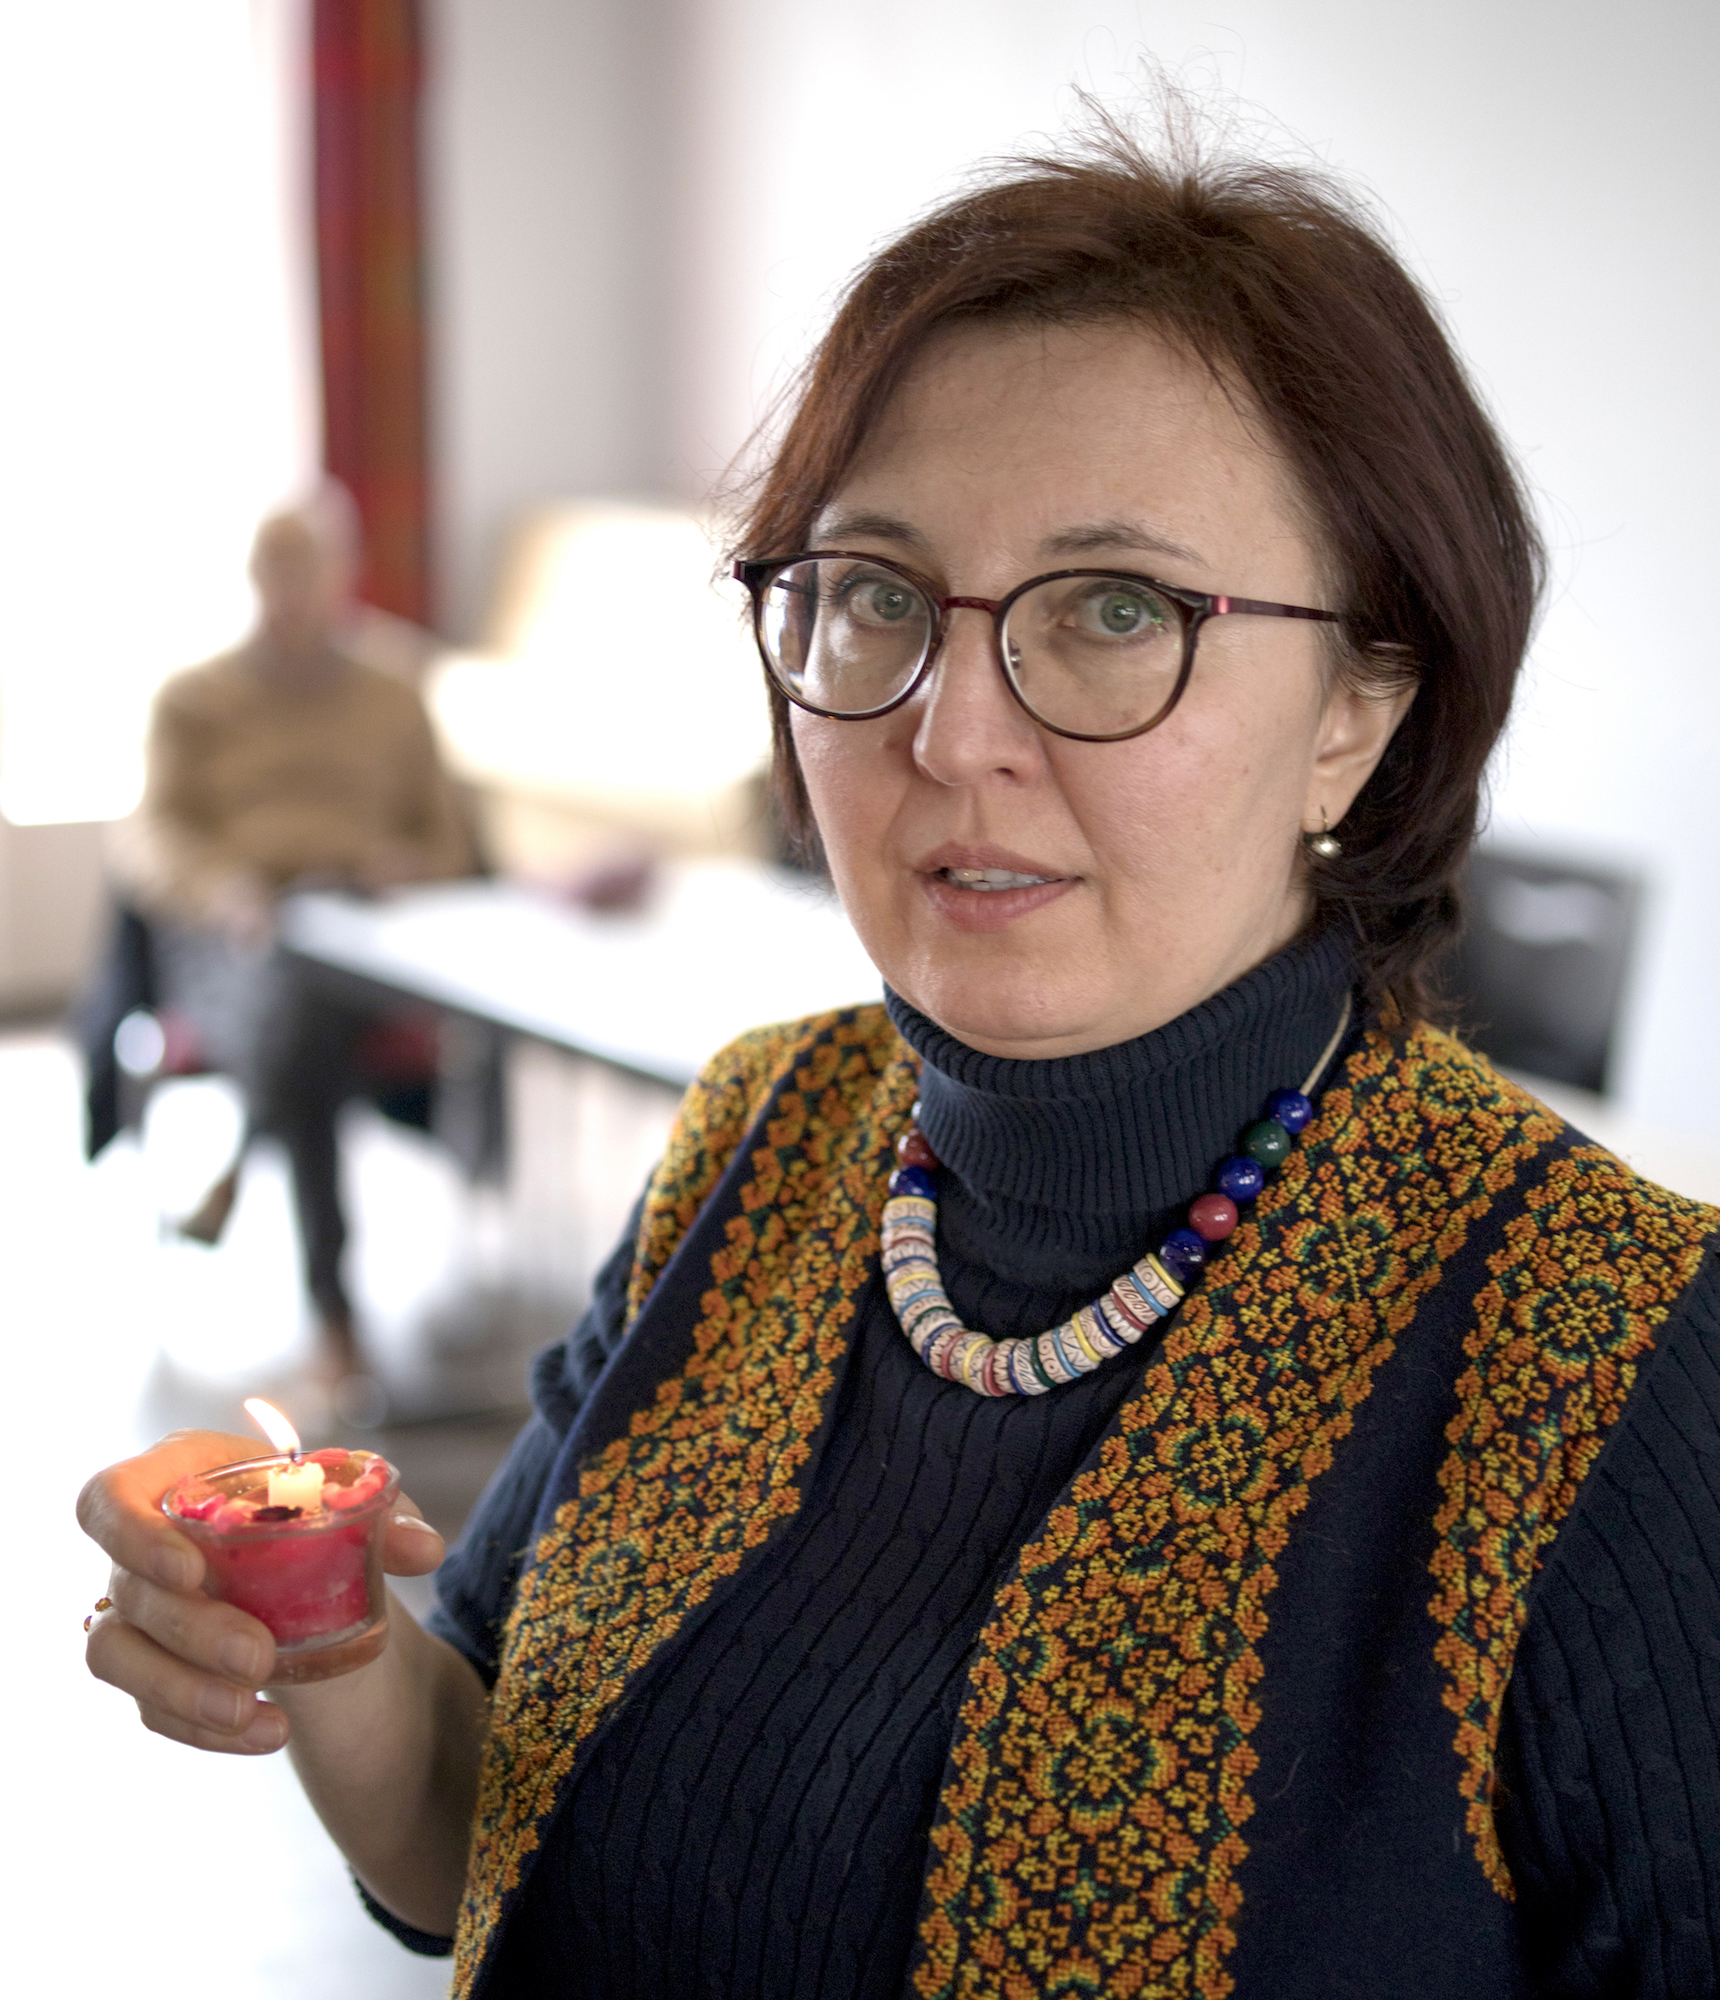 Uljana Schulmeyer engagiert sich mit Herzblut für die Aachener Gemeinde, leitet unter anderem den Chor. (c) Nadja Babiak